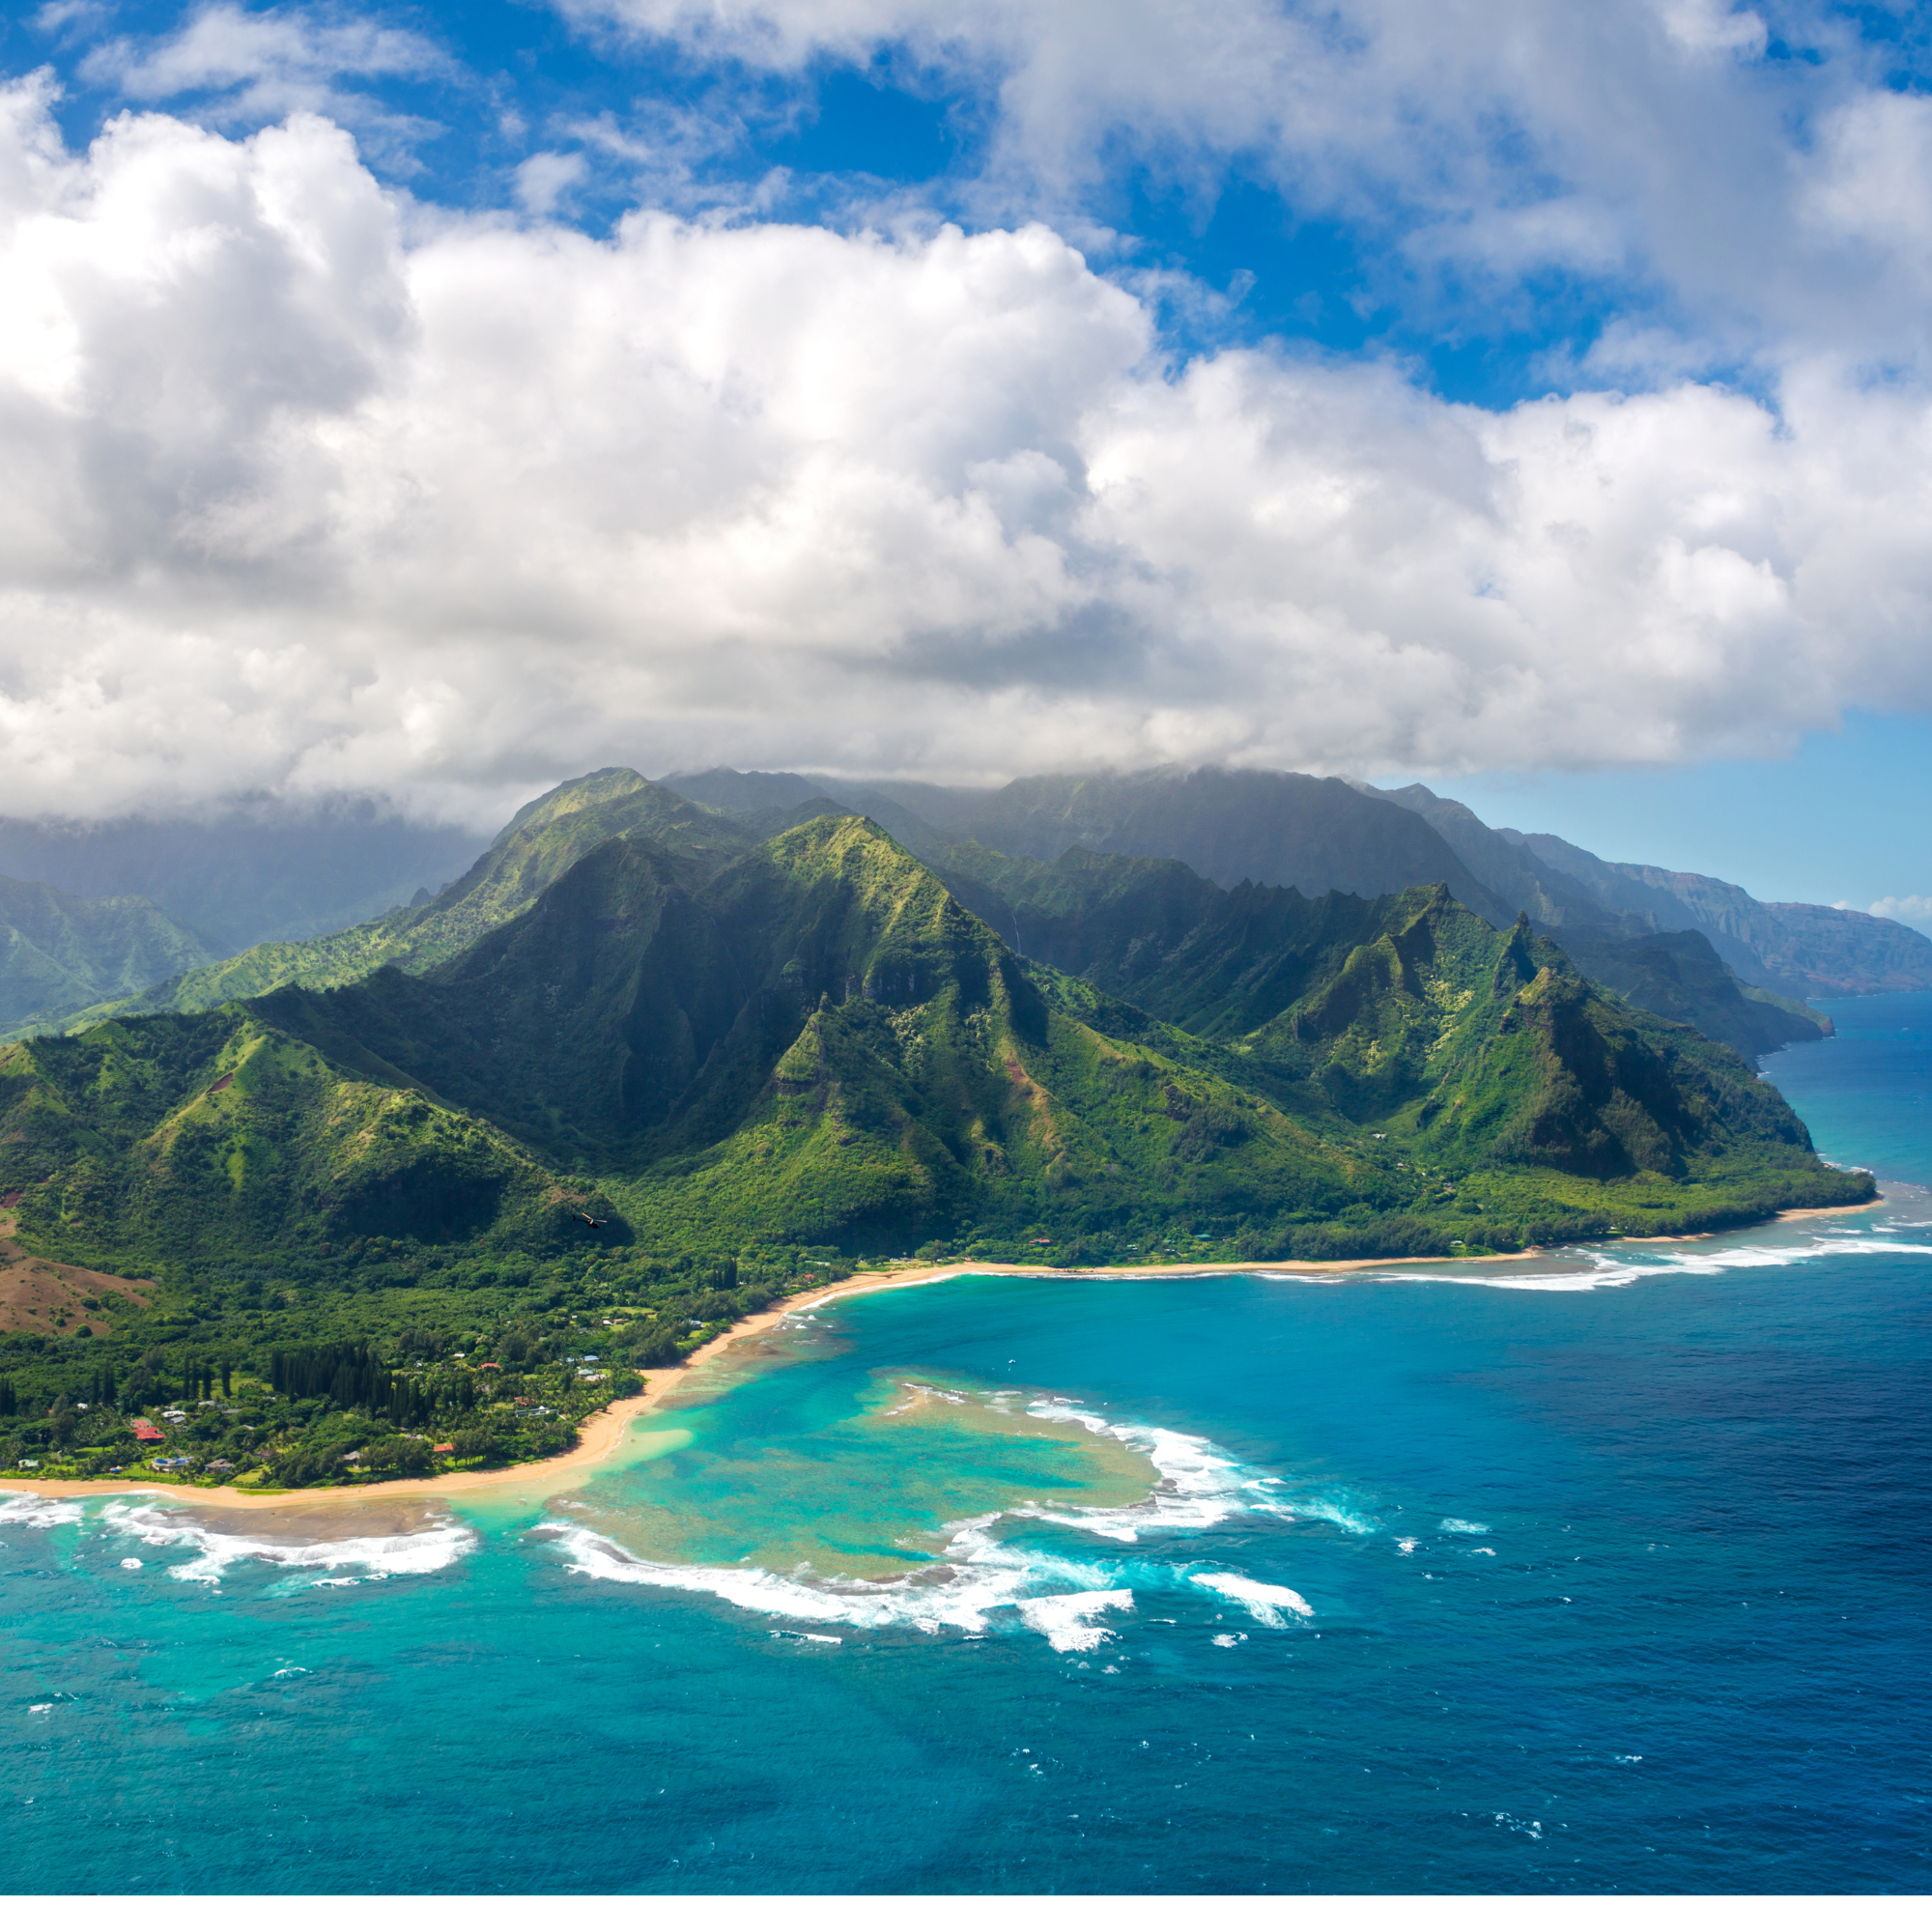 Top 3 Reasons to Visit Kauai This Summer